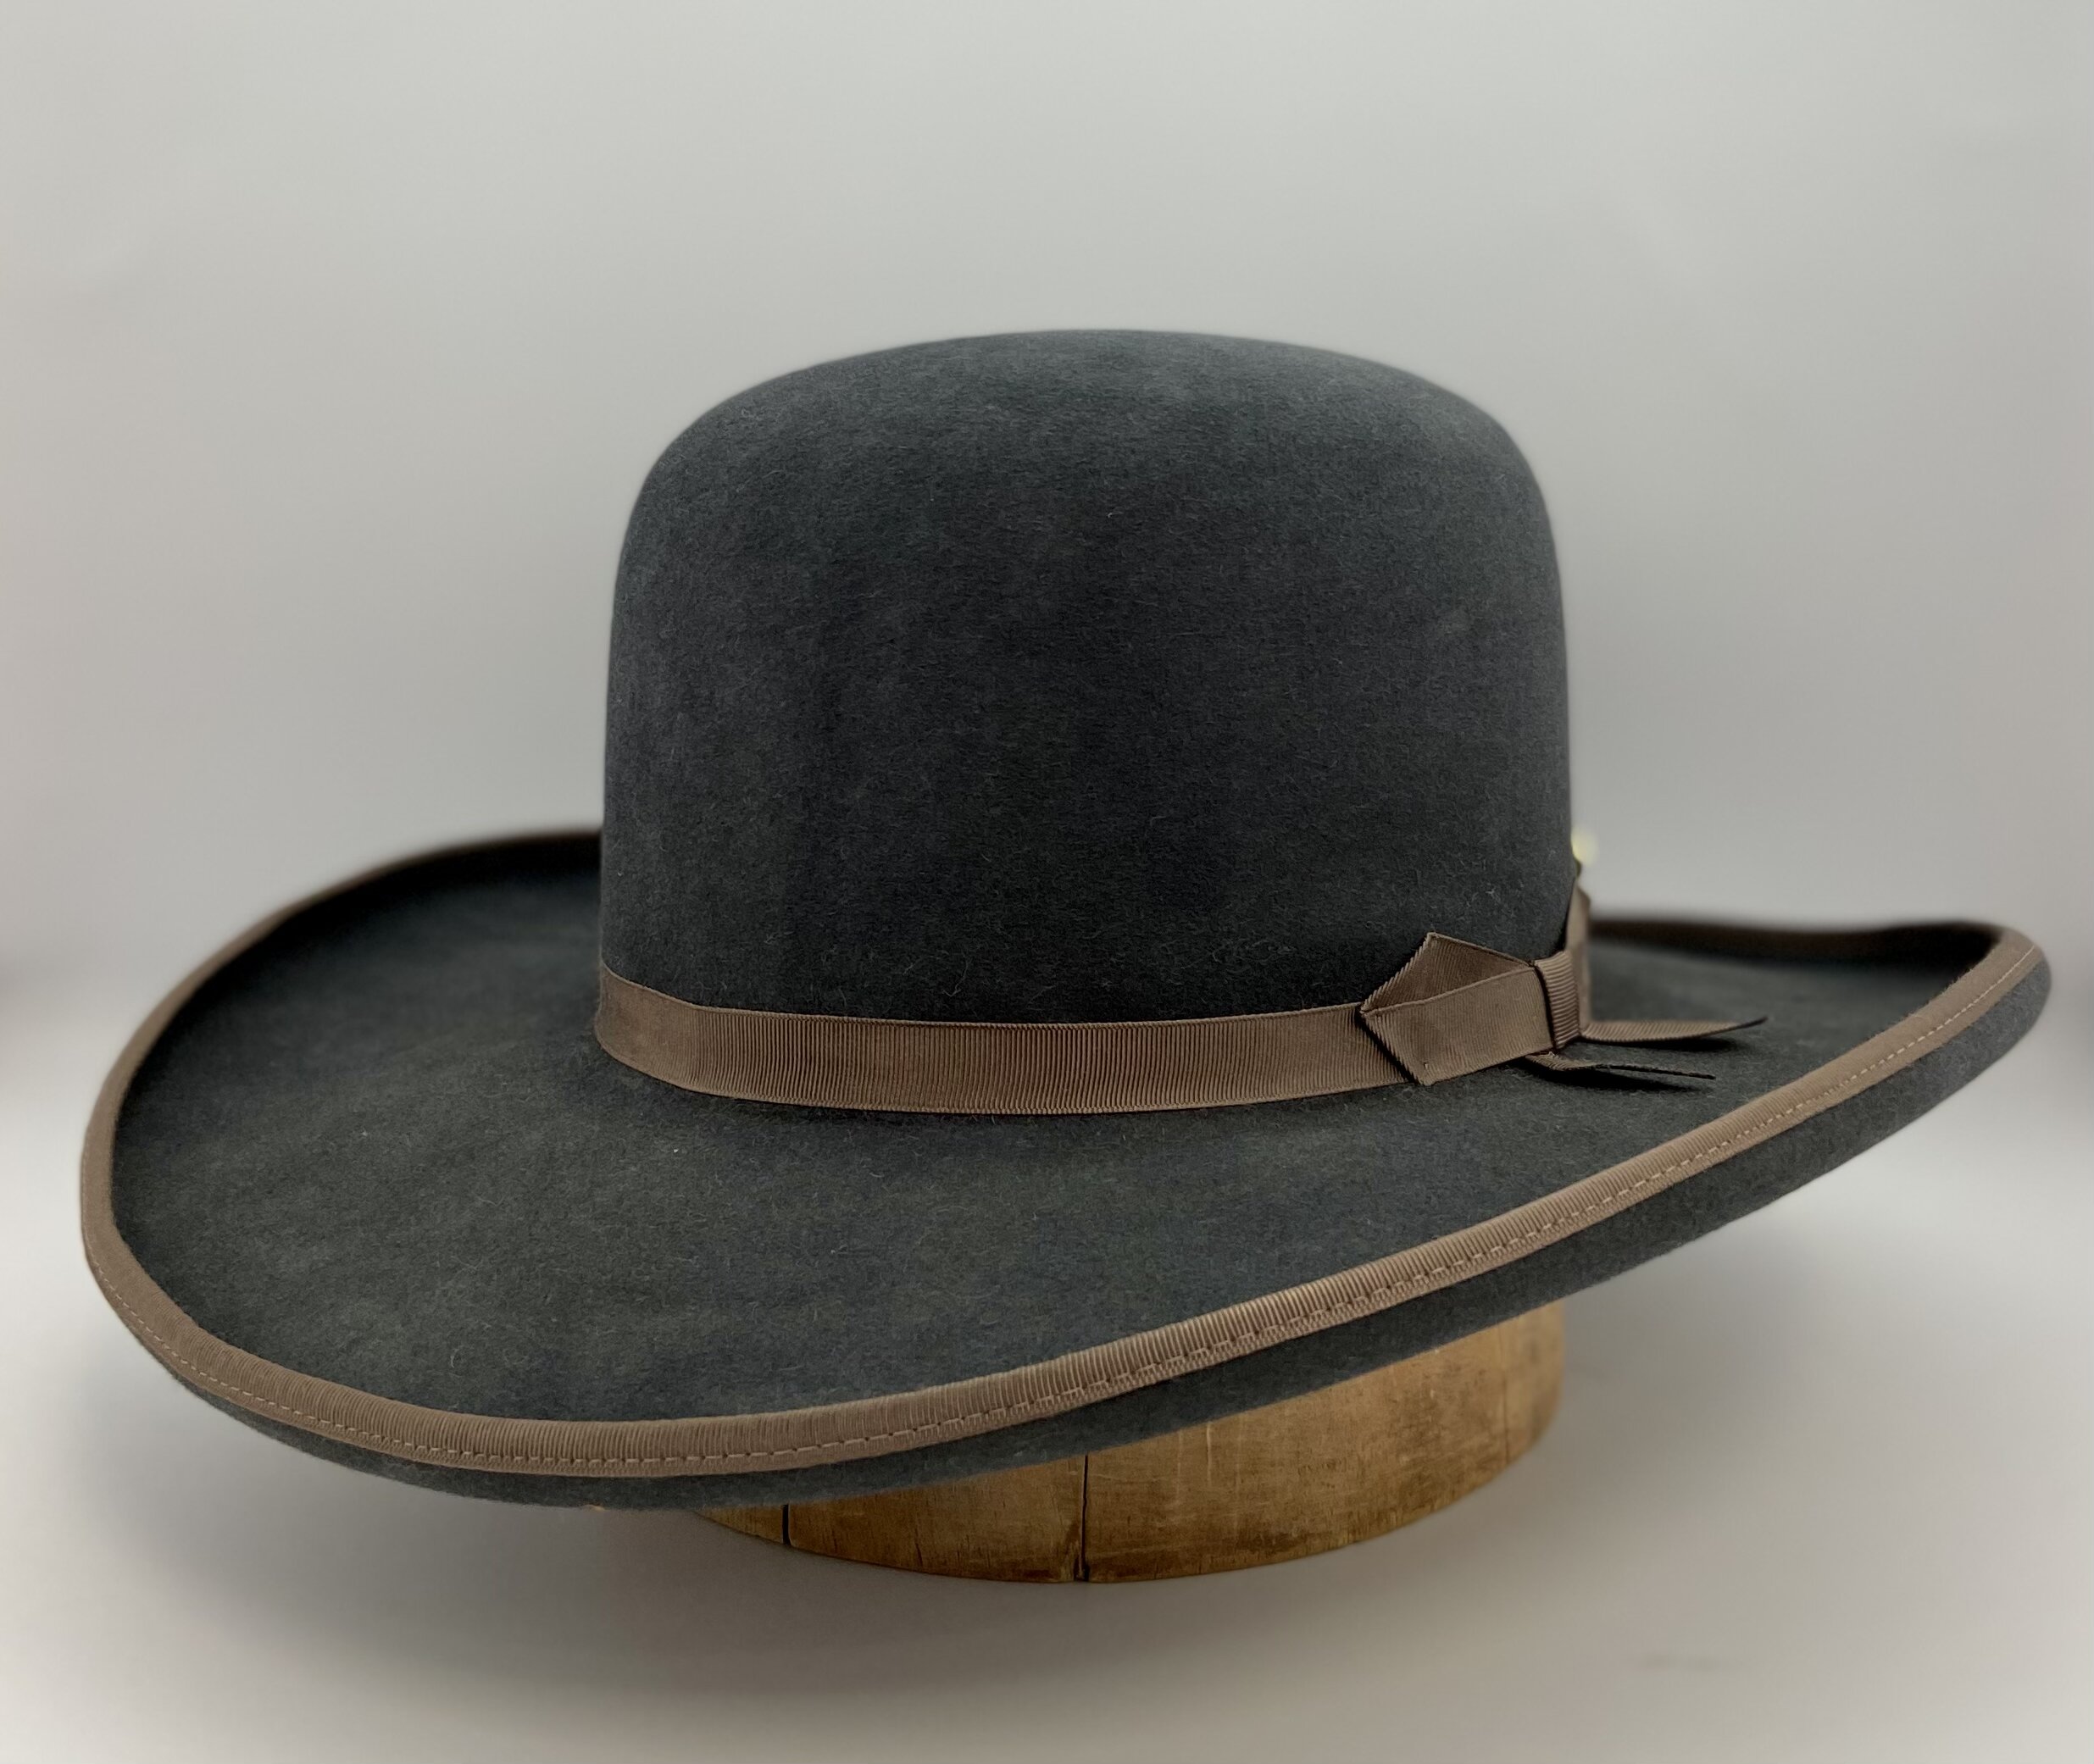 Bowman's Boss of the Plains — Bowman Hat Co.